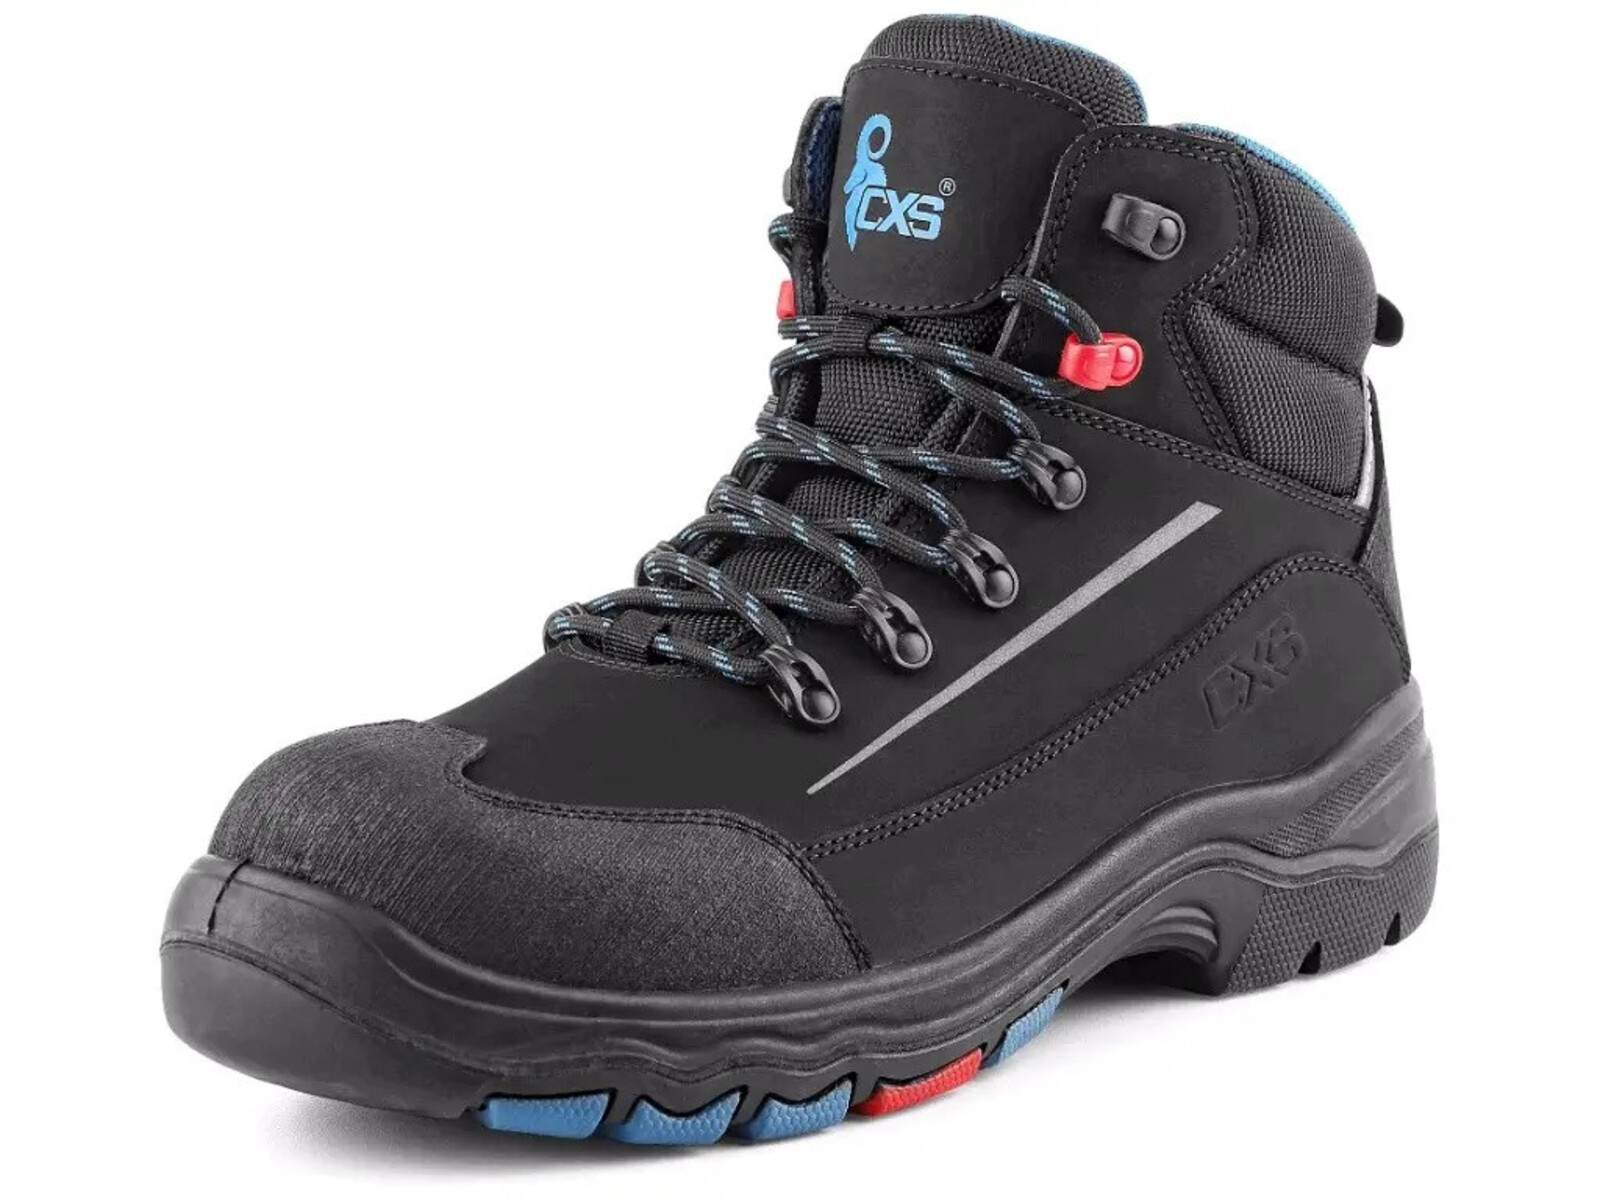 Bezpečnostná členková obuv CXS Land Senja S3S FO HRO SC SR - veľkosť: 38, farba: čierna/modrá